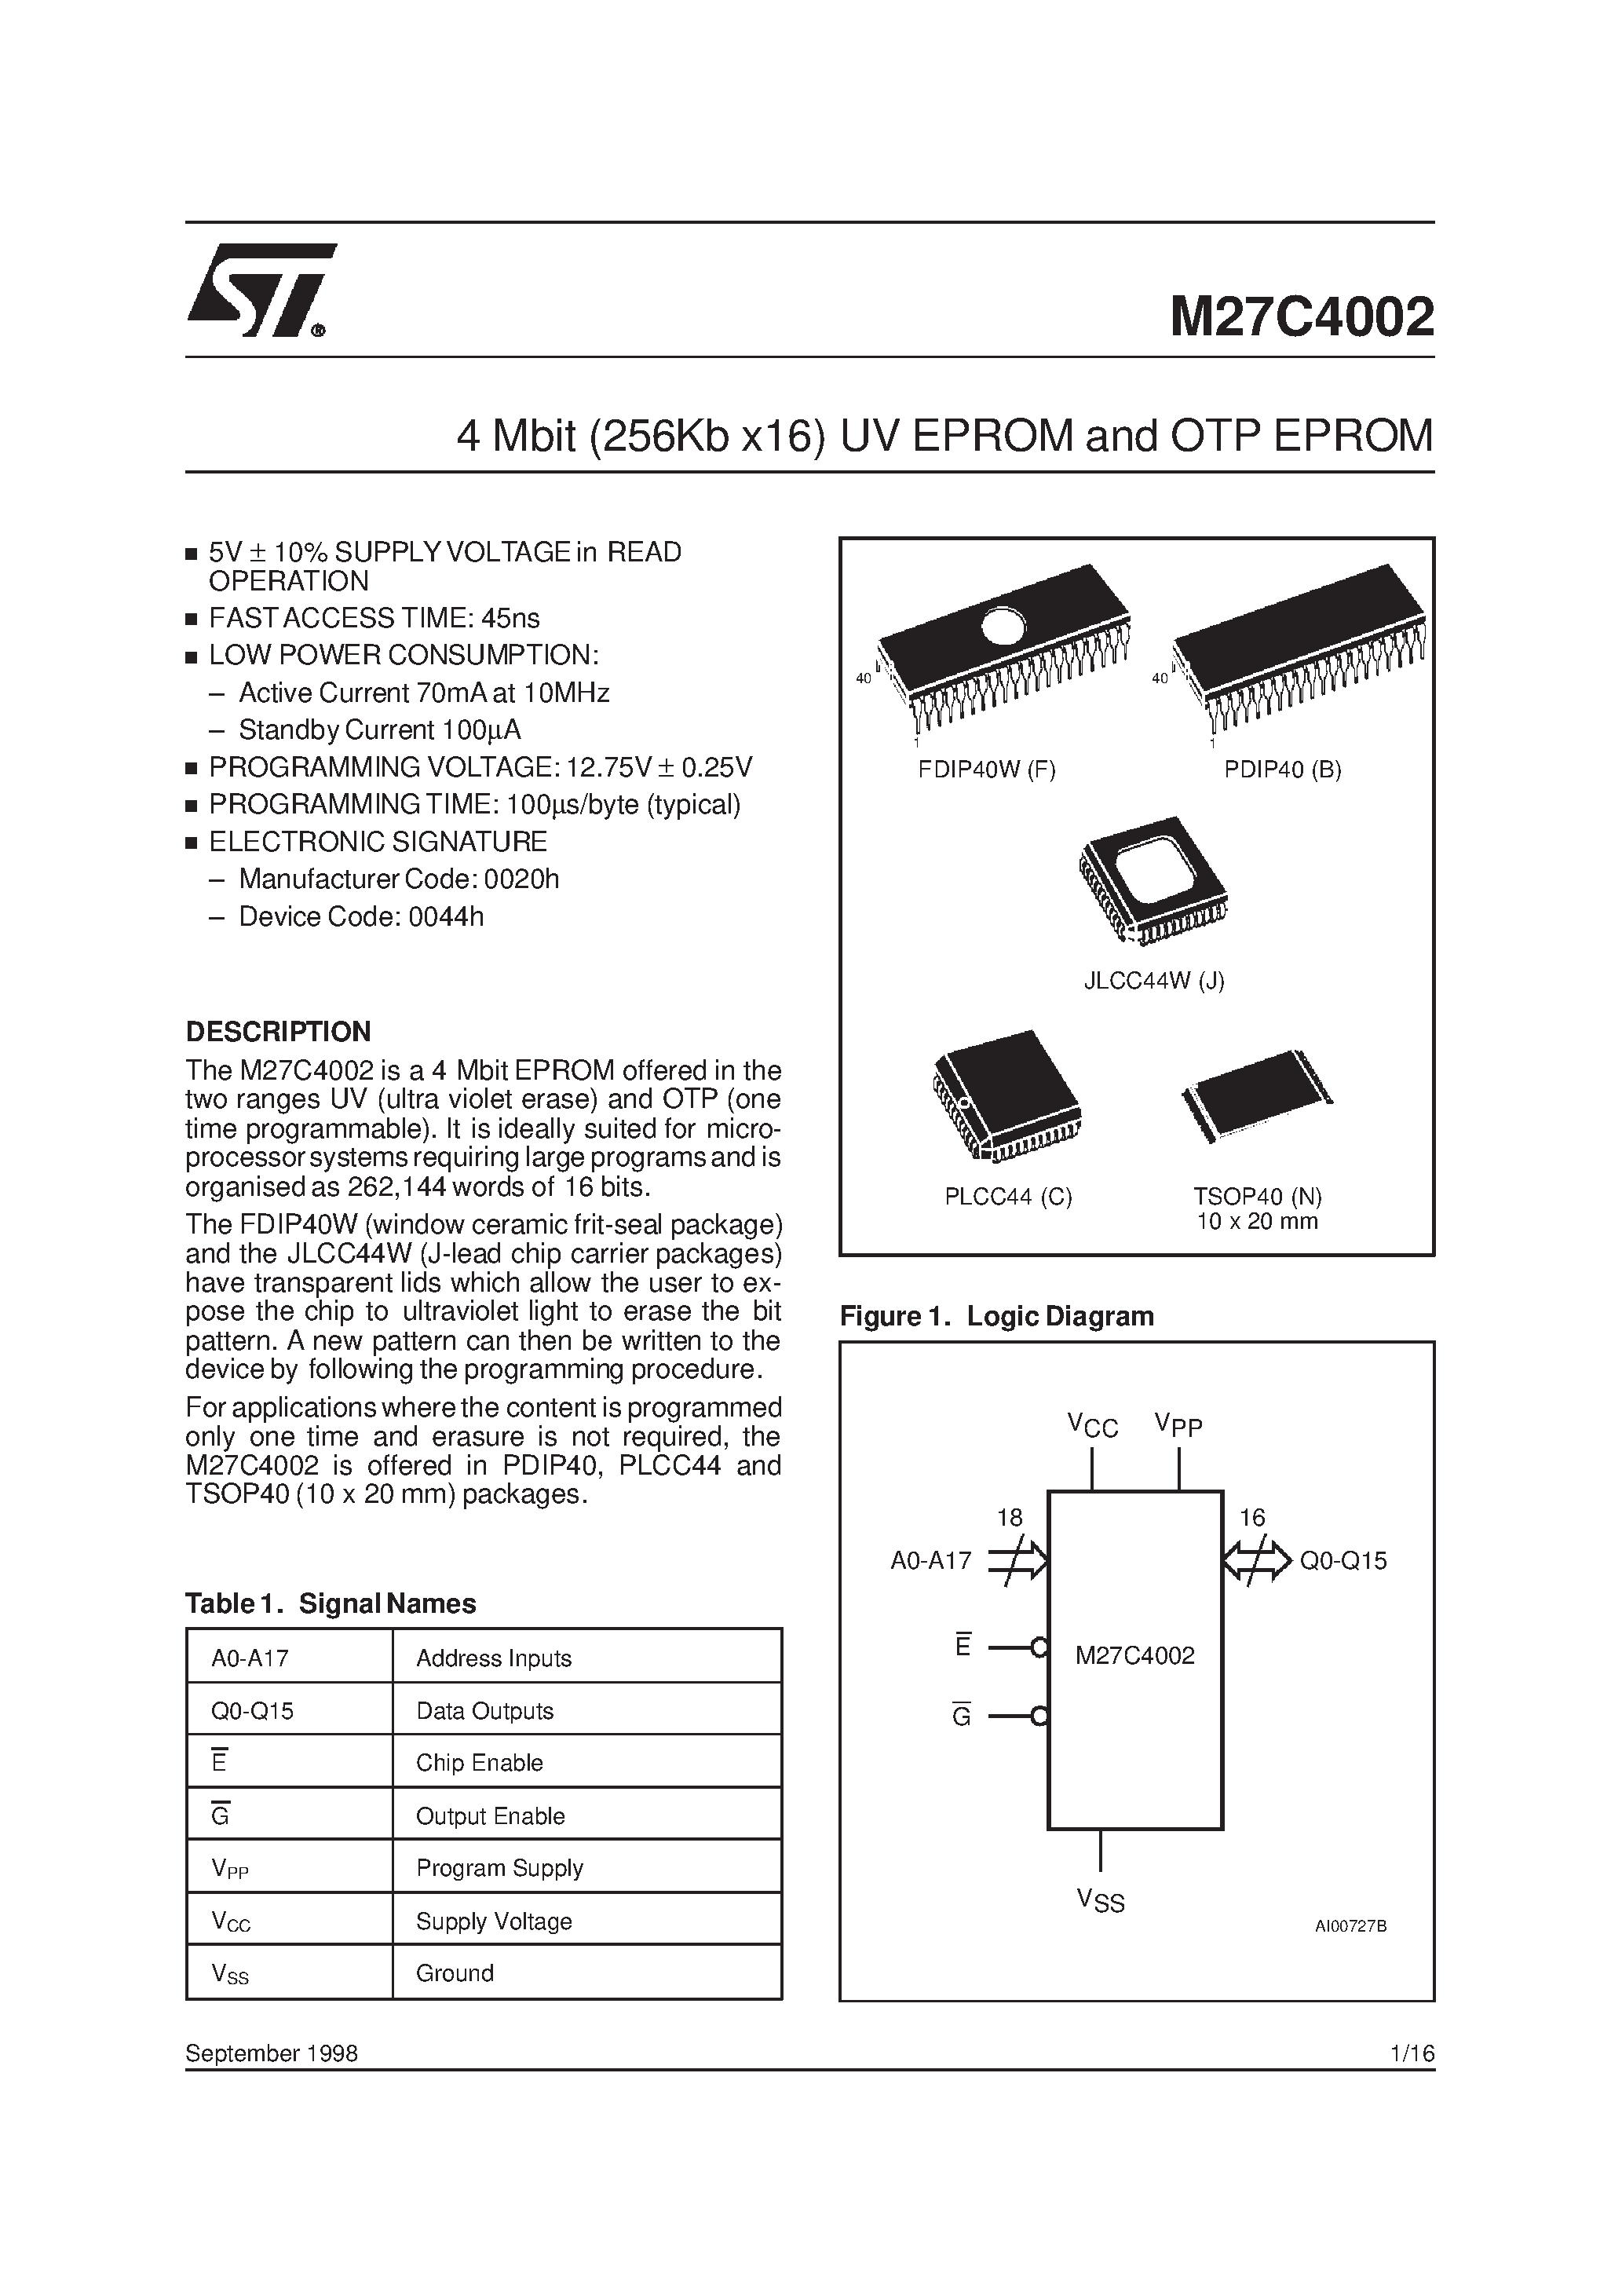 Datasheet M27C4002-10J1X - 4 Mbit 256Kb x16 UV EPROM and OTP EPROM page 1